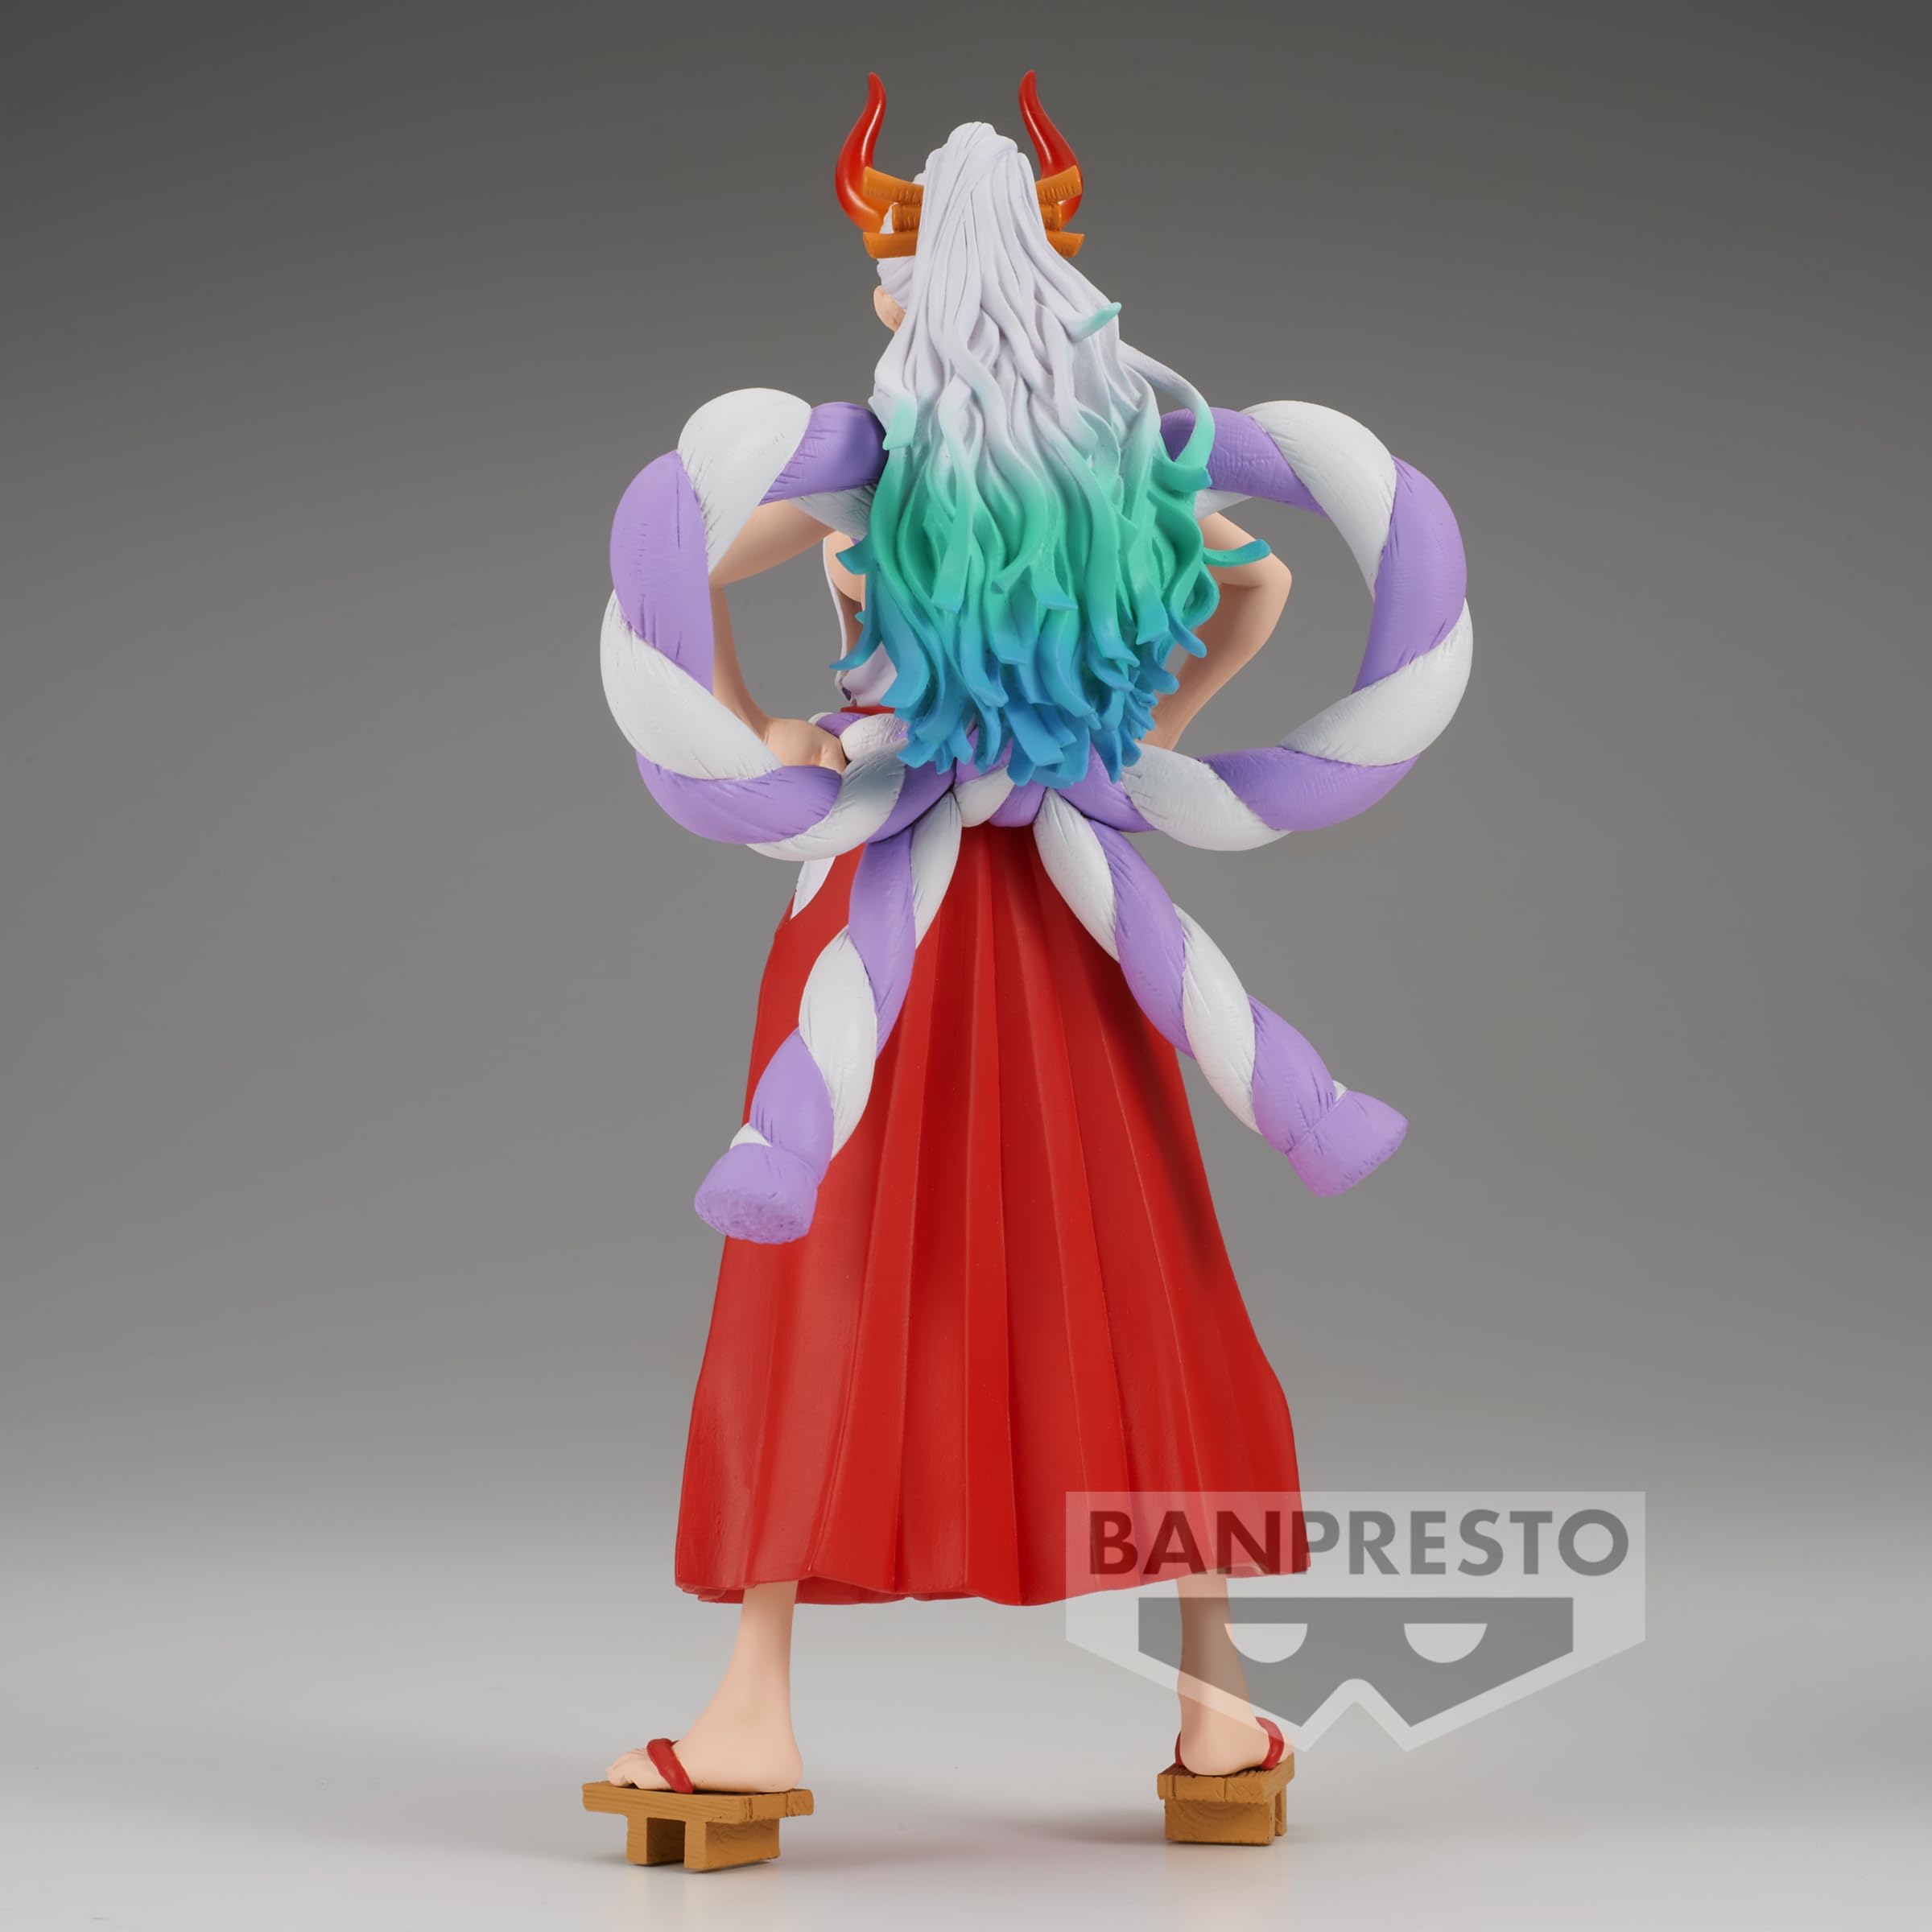 Banpresto - One Piece - The Yamato, Bandai Spirits King of Artist Figure